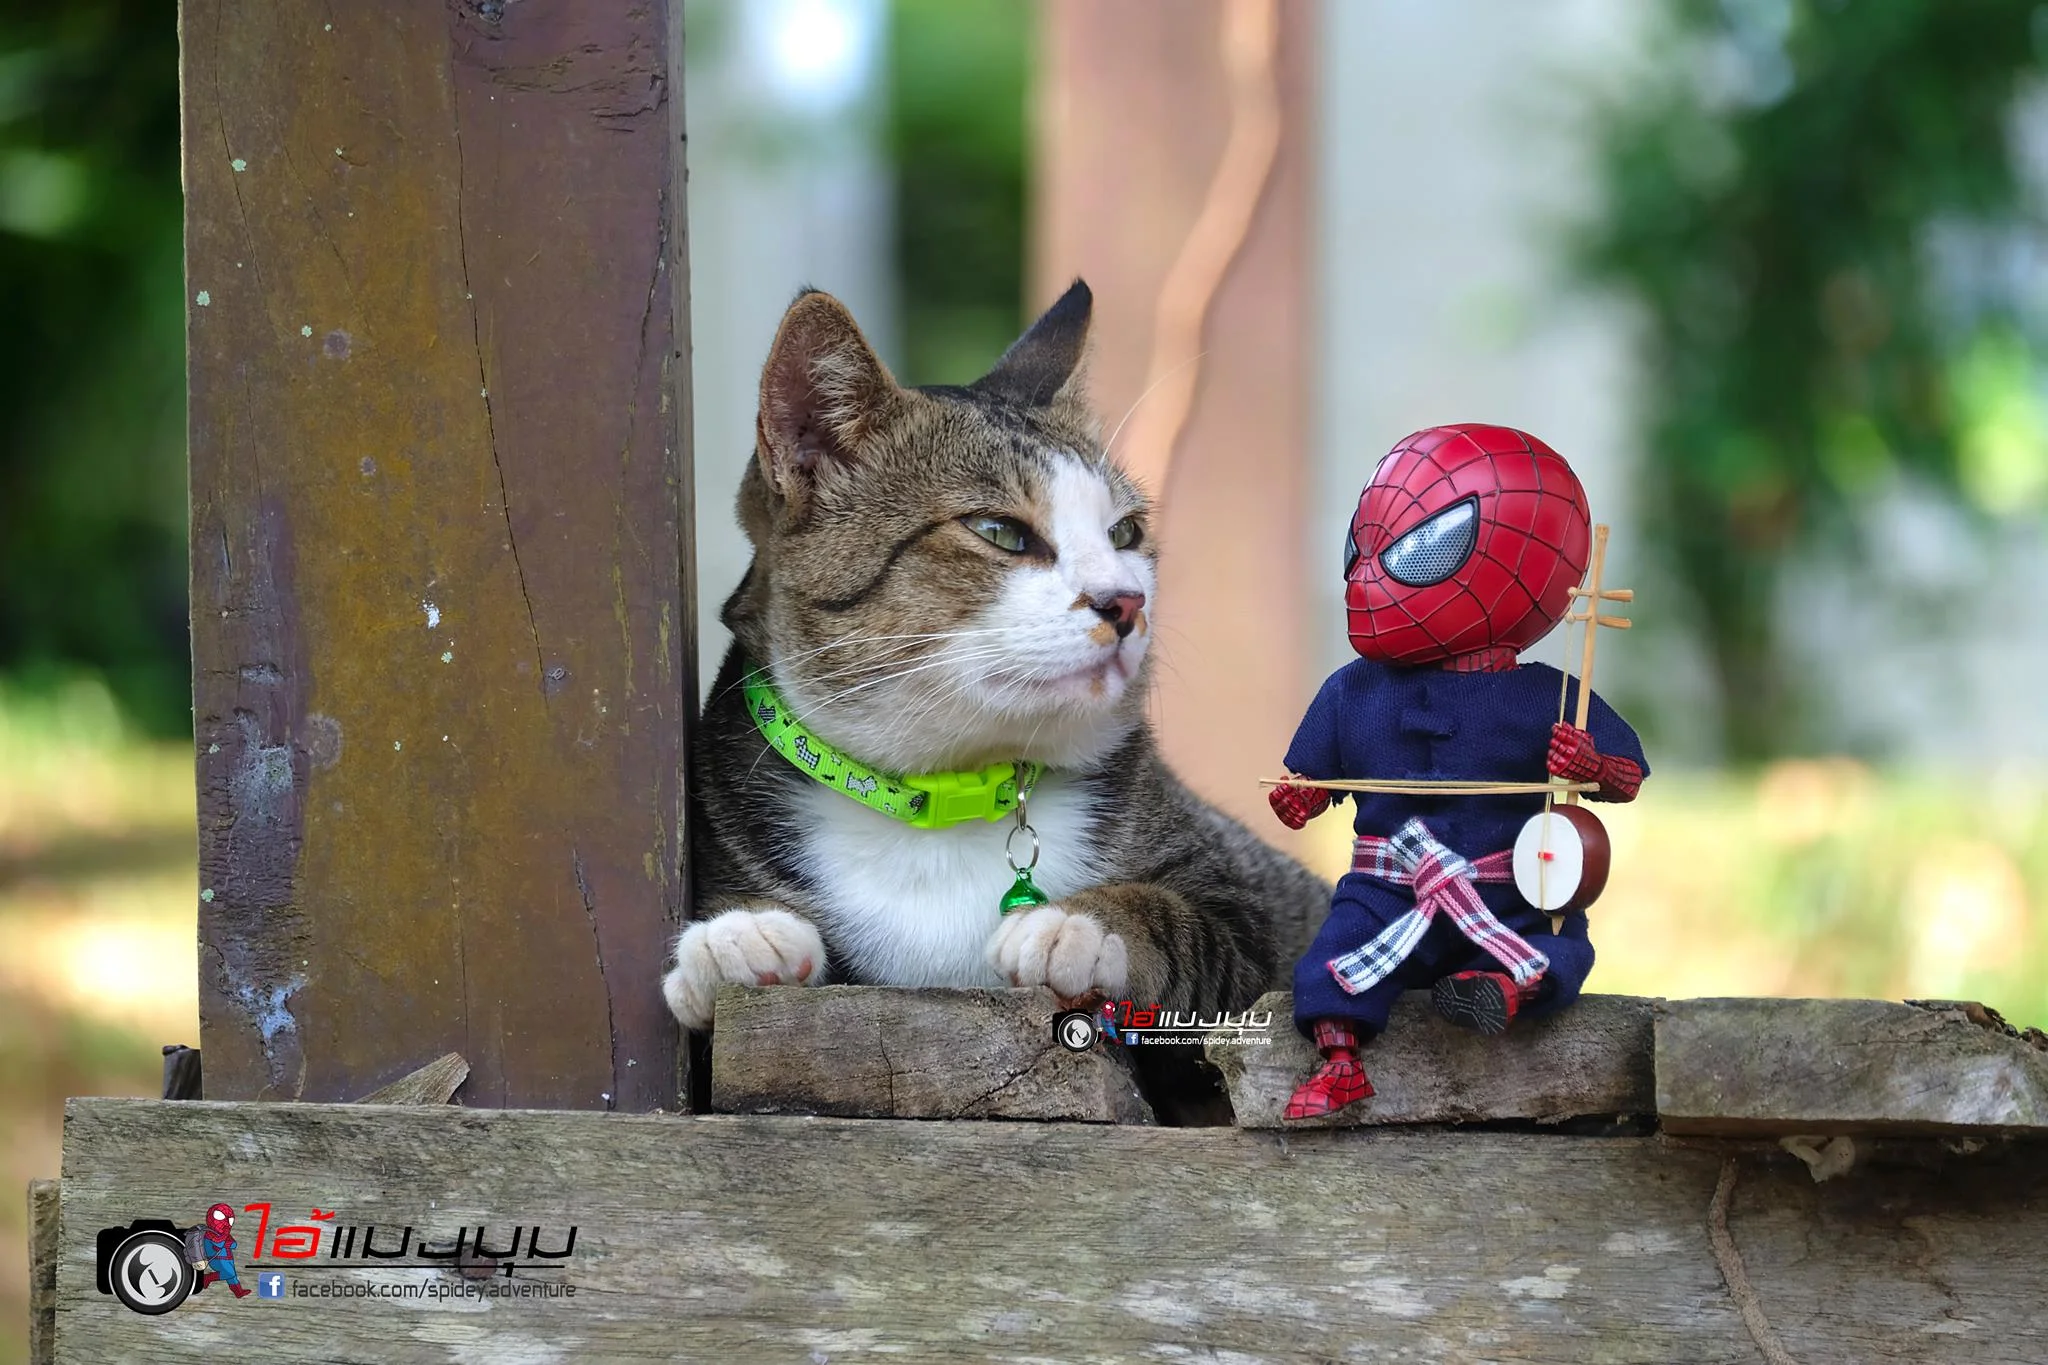 Художник додав до фото з котиками зображення Людини-павука – це виглядає дуже смішно - фото 459362